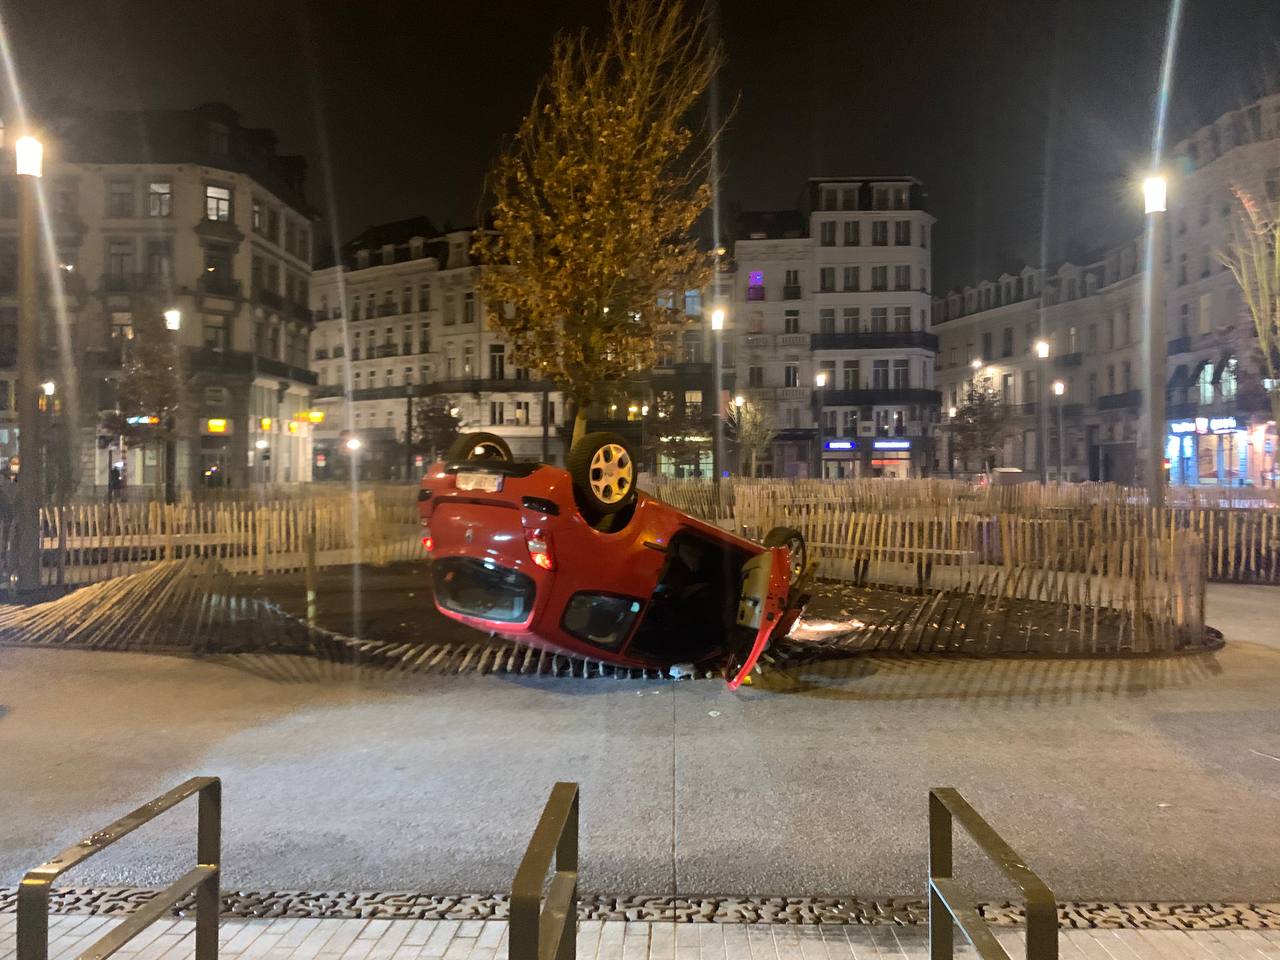 Une voiture totalement retournée, les quatre roues en l'air (place Anneessens, Bruxelles)